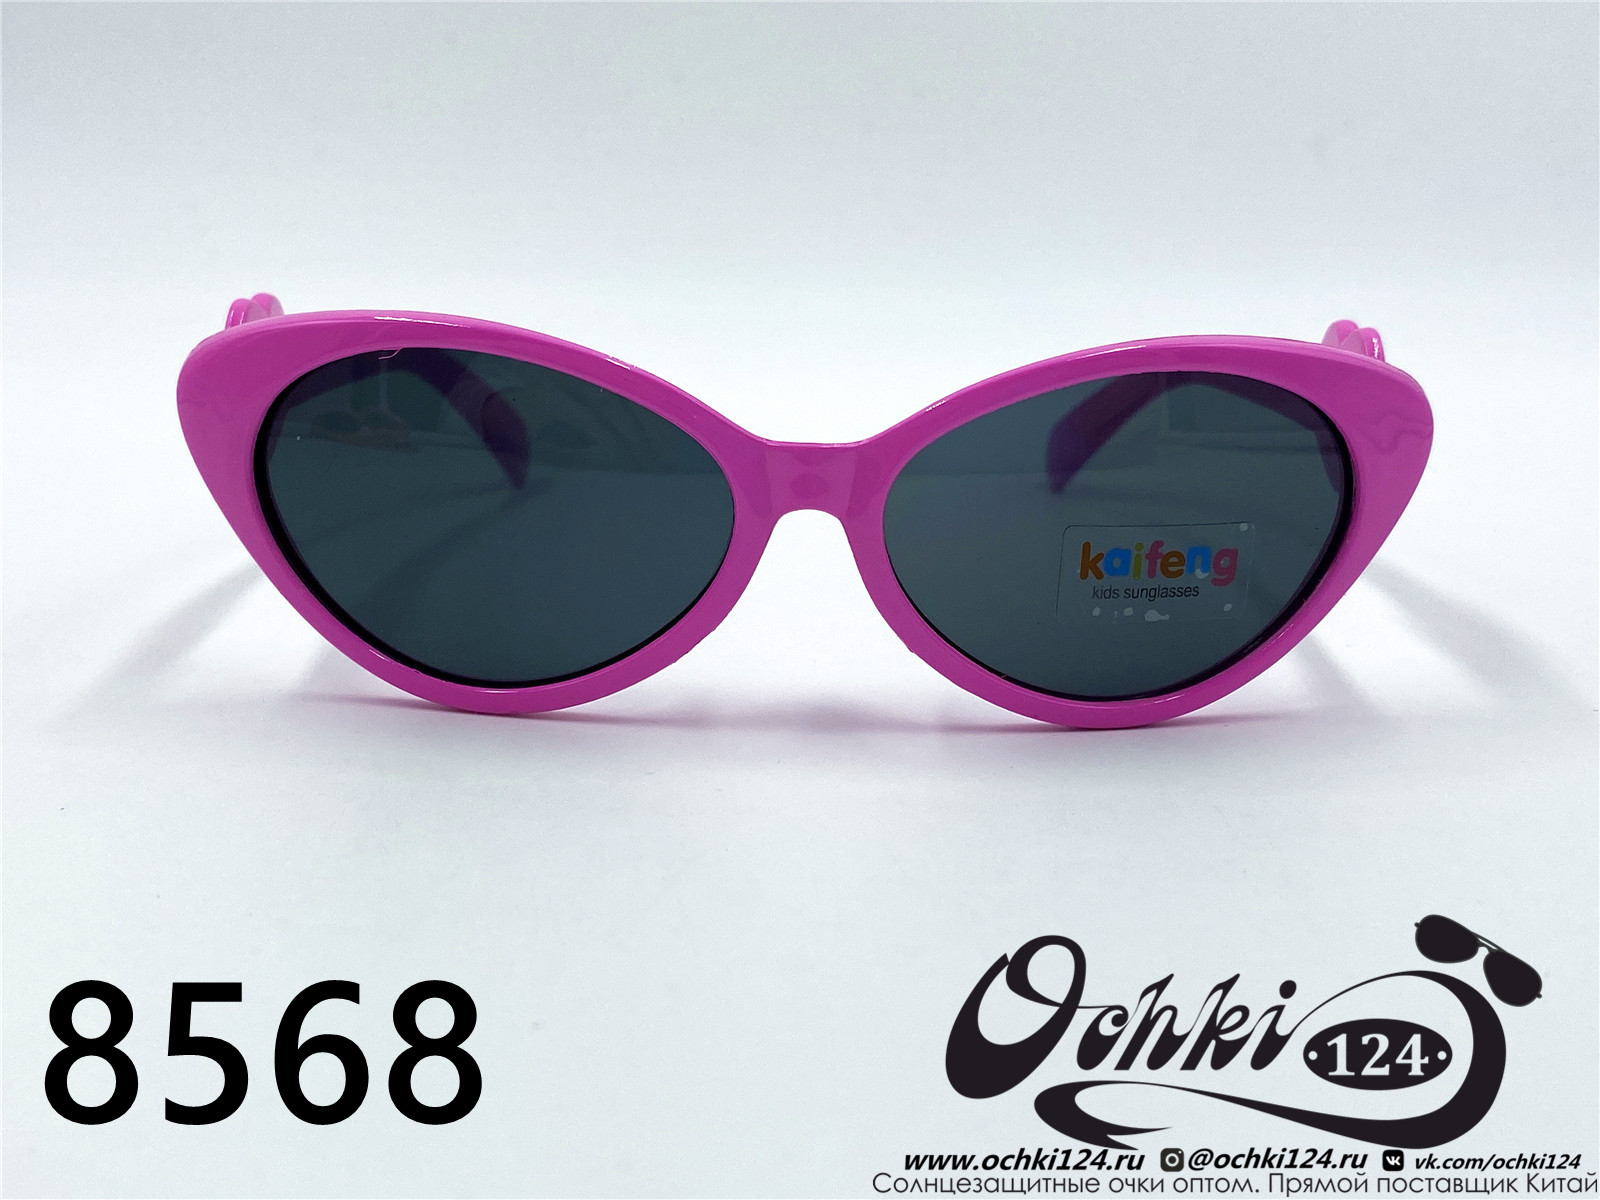  Солнцезащитные очки картинка 2022 Детские Геометрические формы  8568-7 